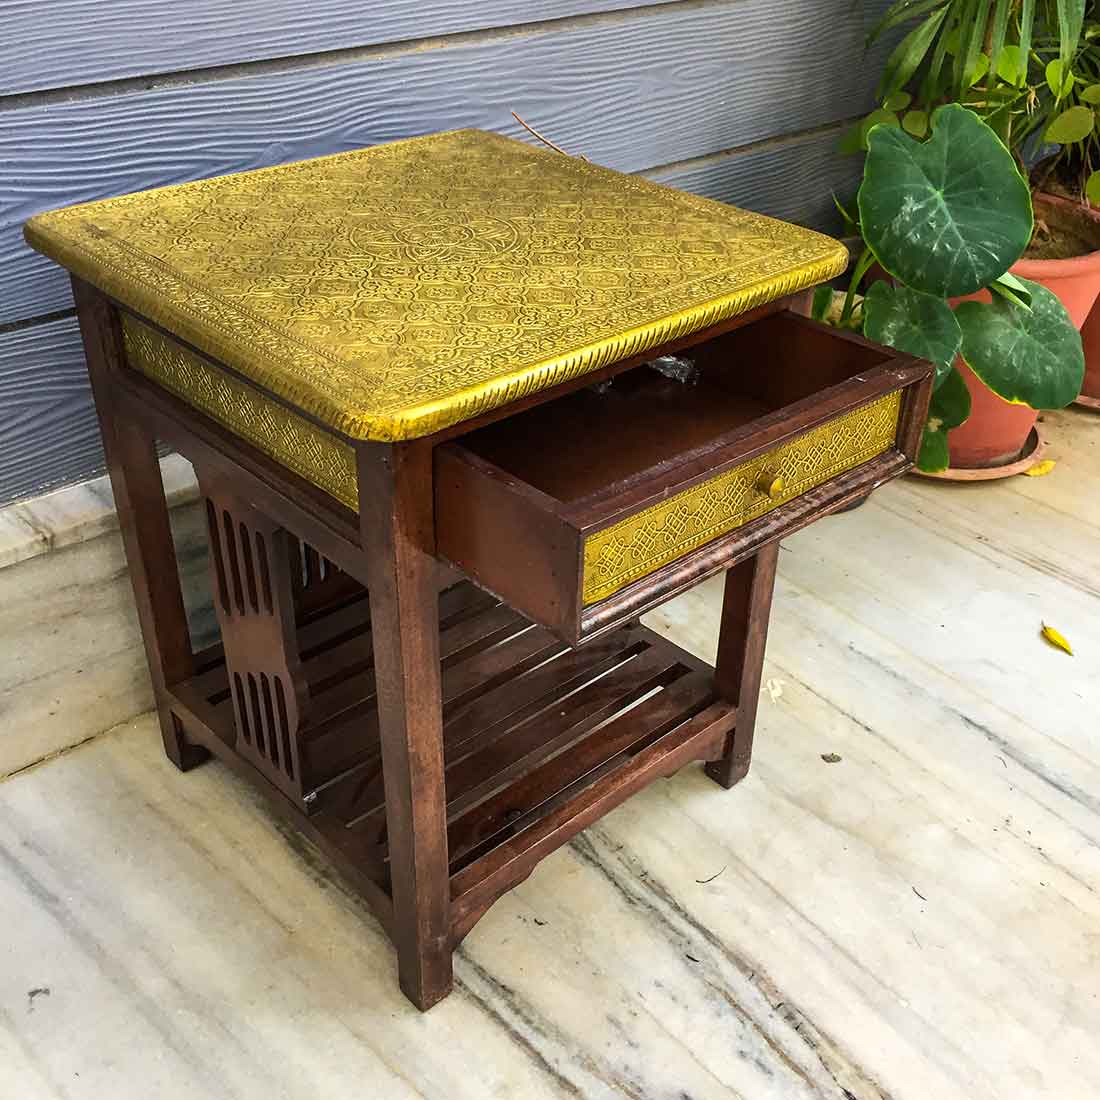 Bedside Table with Drawer - Brass Embellished | Side Table with Storage - for Bedroom & Living Room - ApkaMart